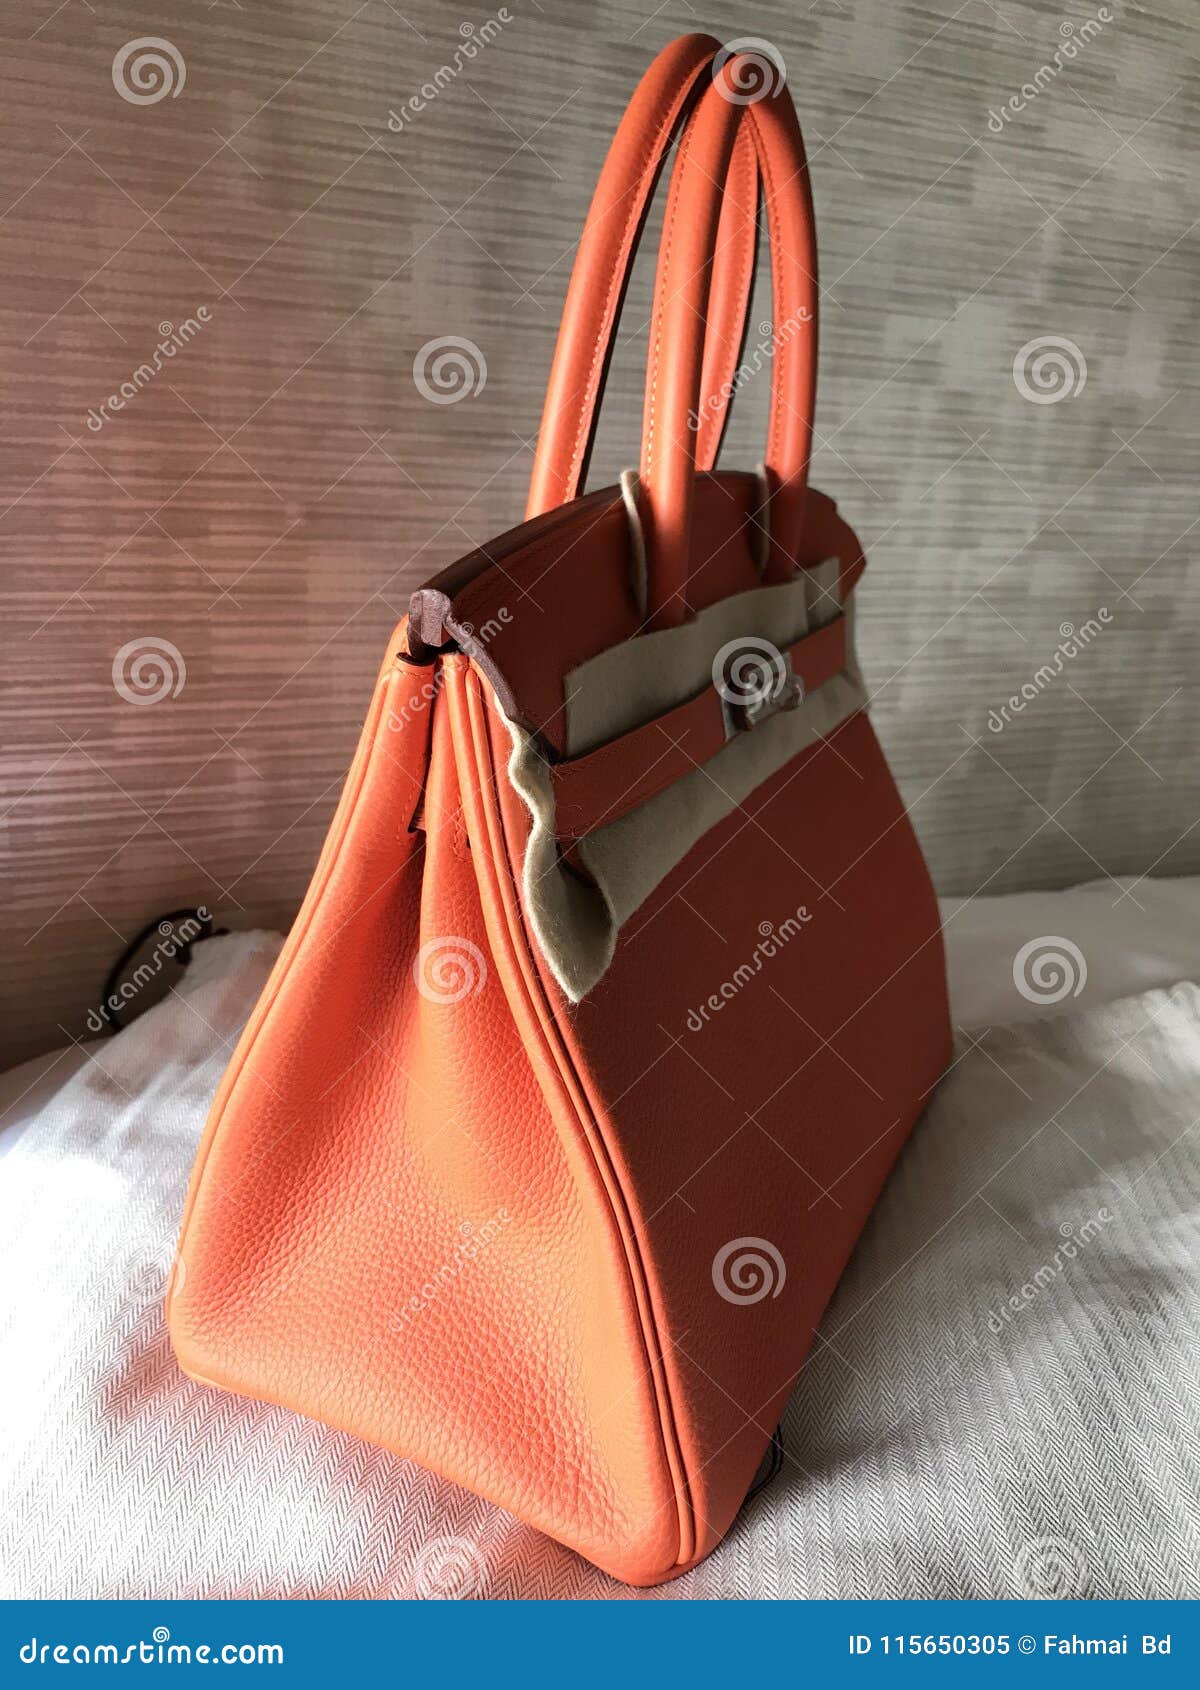 Hermes Birkin Size 30 Togo Leather Luxury Shopping Bag Editorial Image -  Image of luxurybag, kellybag: 115650305